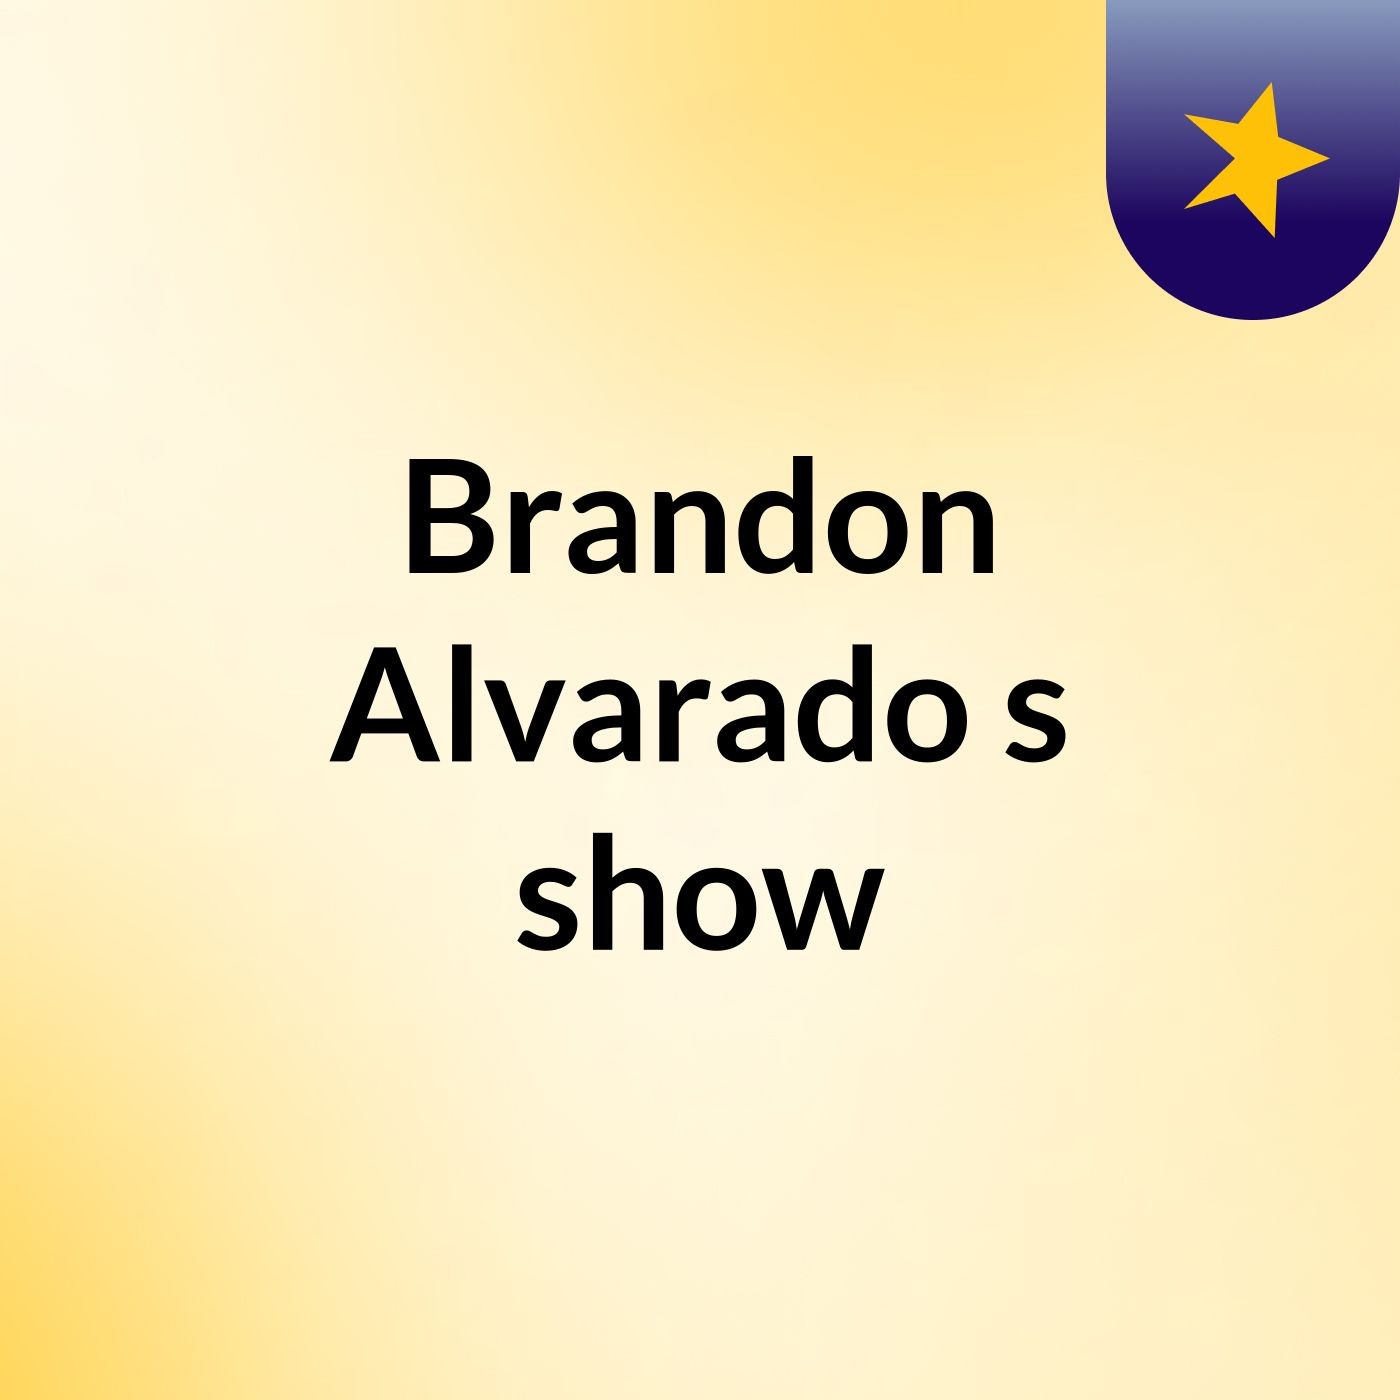 Episode 3 - Brandon Alvarado's show